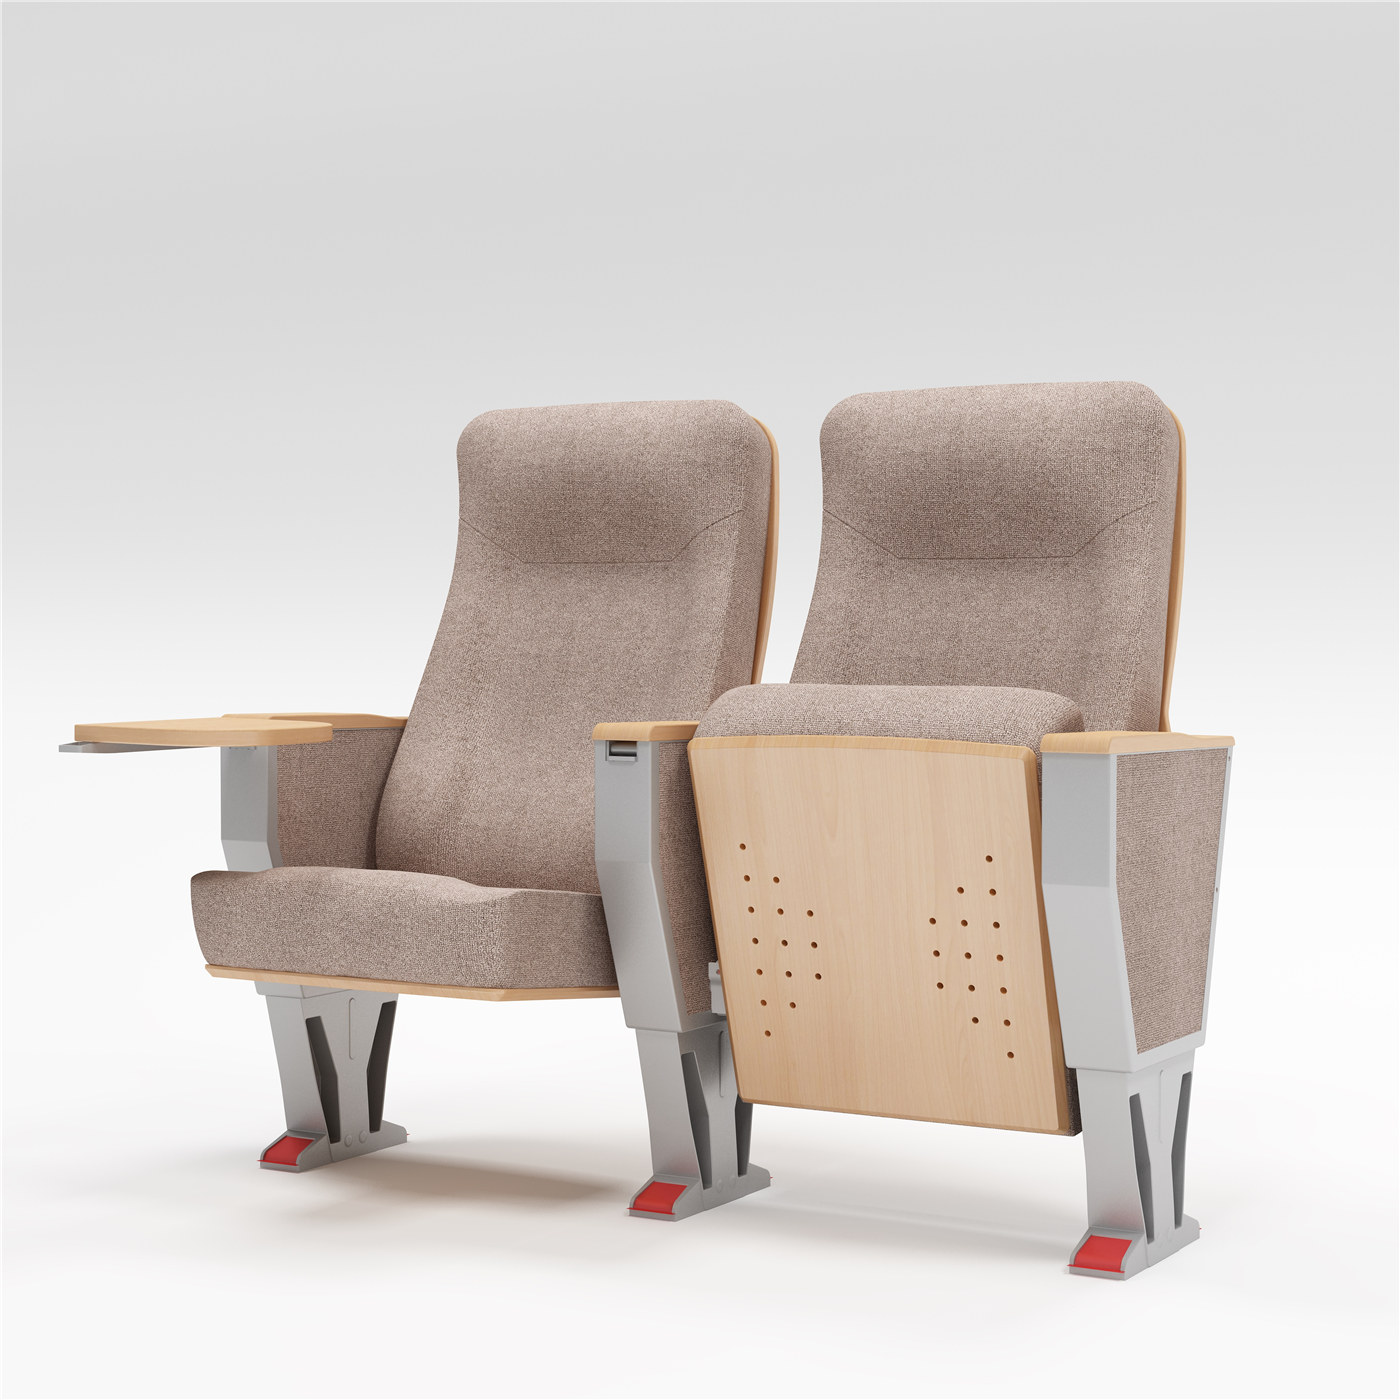 Poboljšajte estetiku svog prostora sa prilagodljivim sjedalima renomiranih proizvođača101